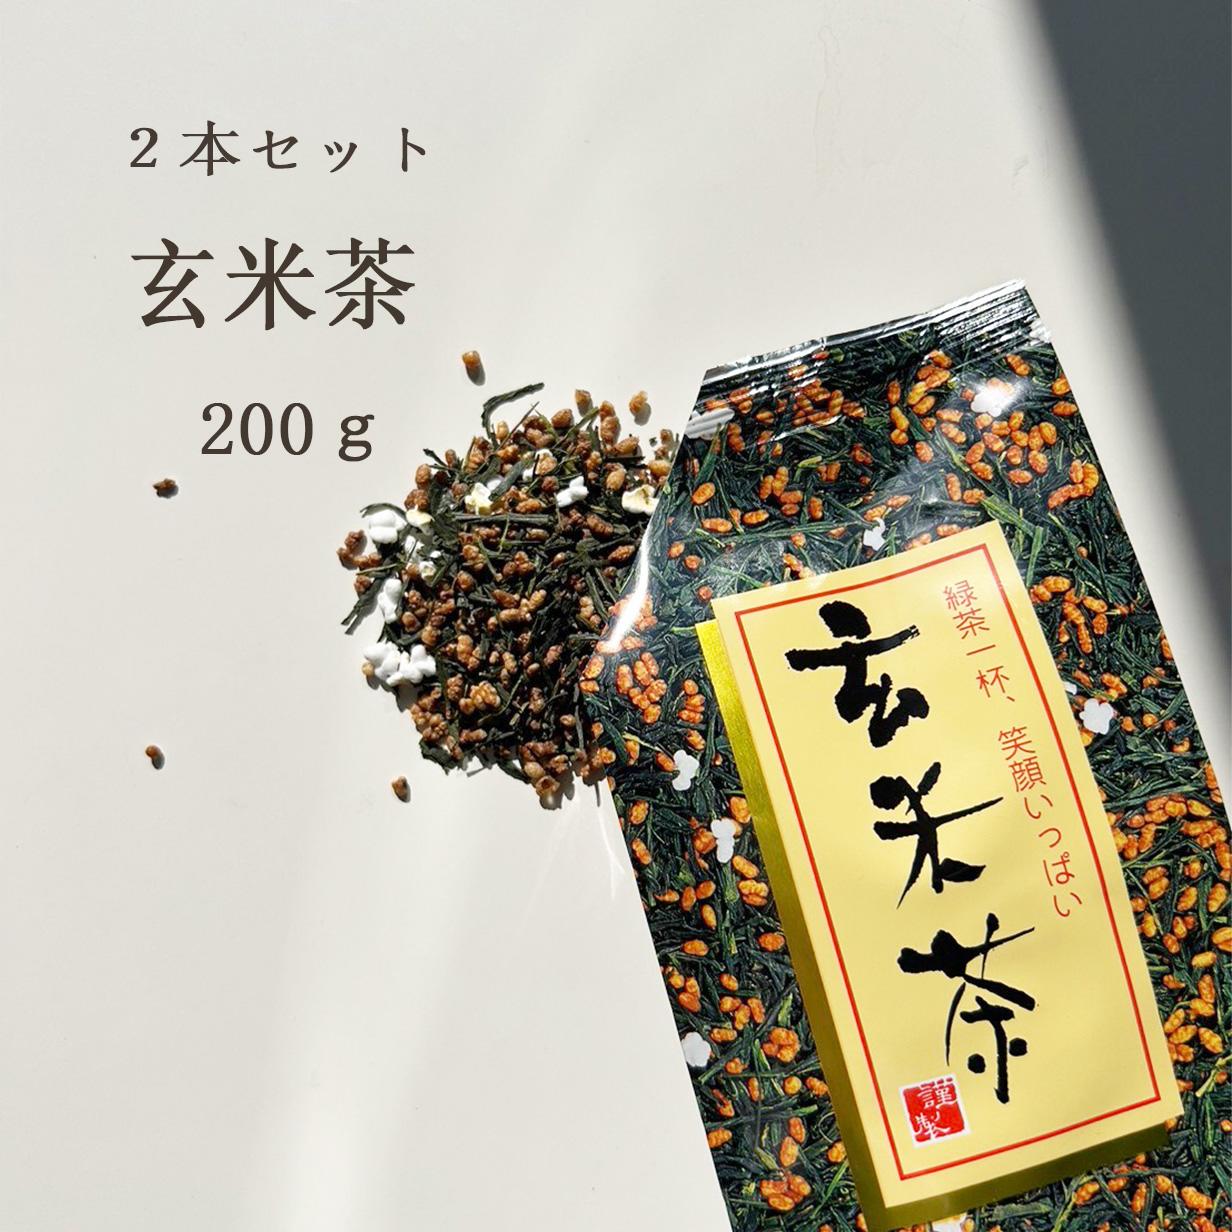 お茶 玄米茶【2本セット】200g お茶 送料無料 茶葉 日本茶 茶葉 家庭用